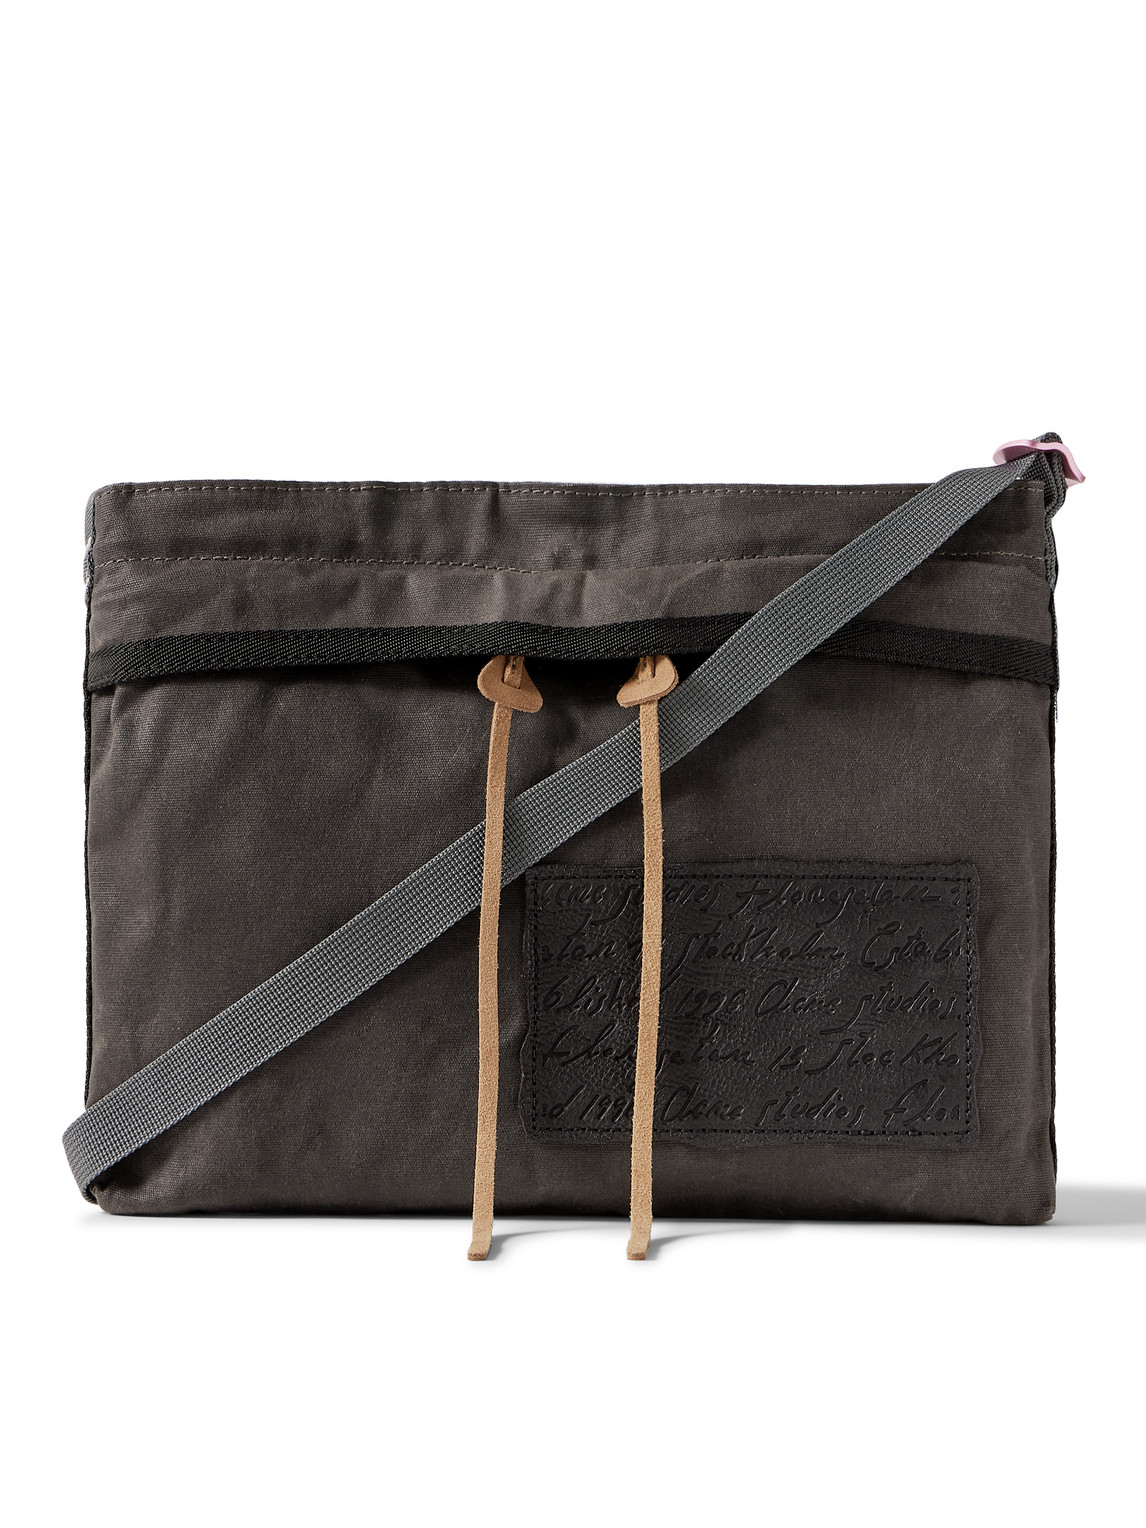 Andemer Leather-Trimmed Appliquéd Coated-Canvas Messenger Bag